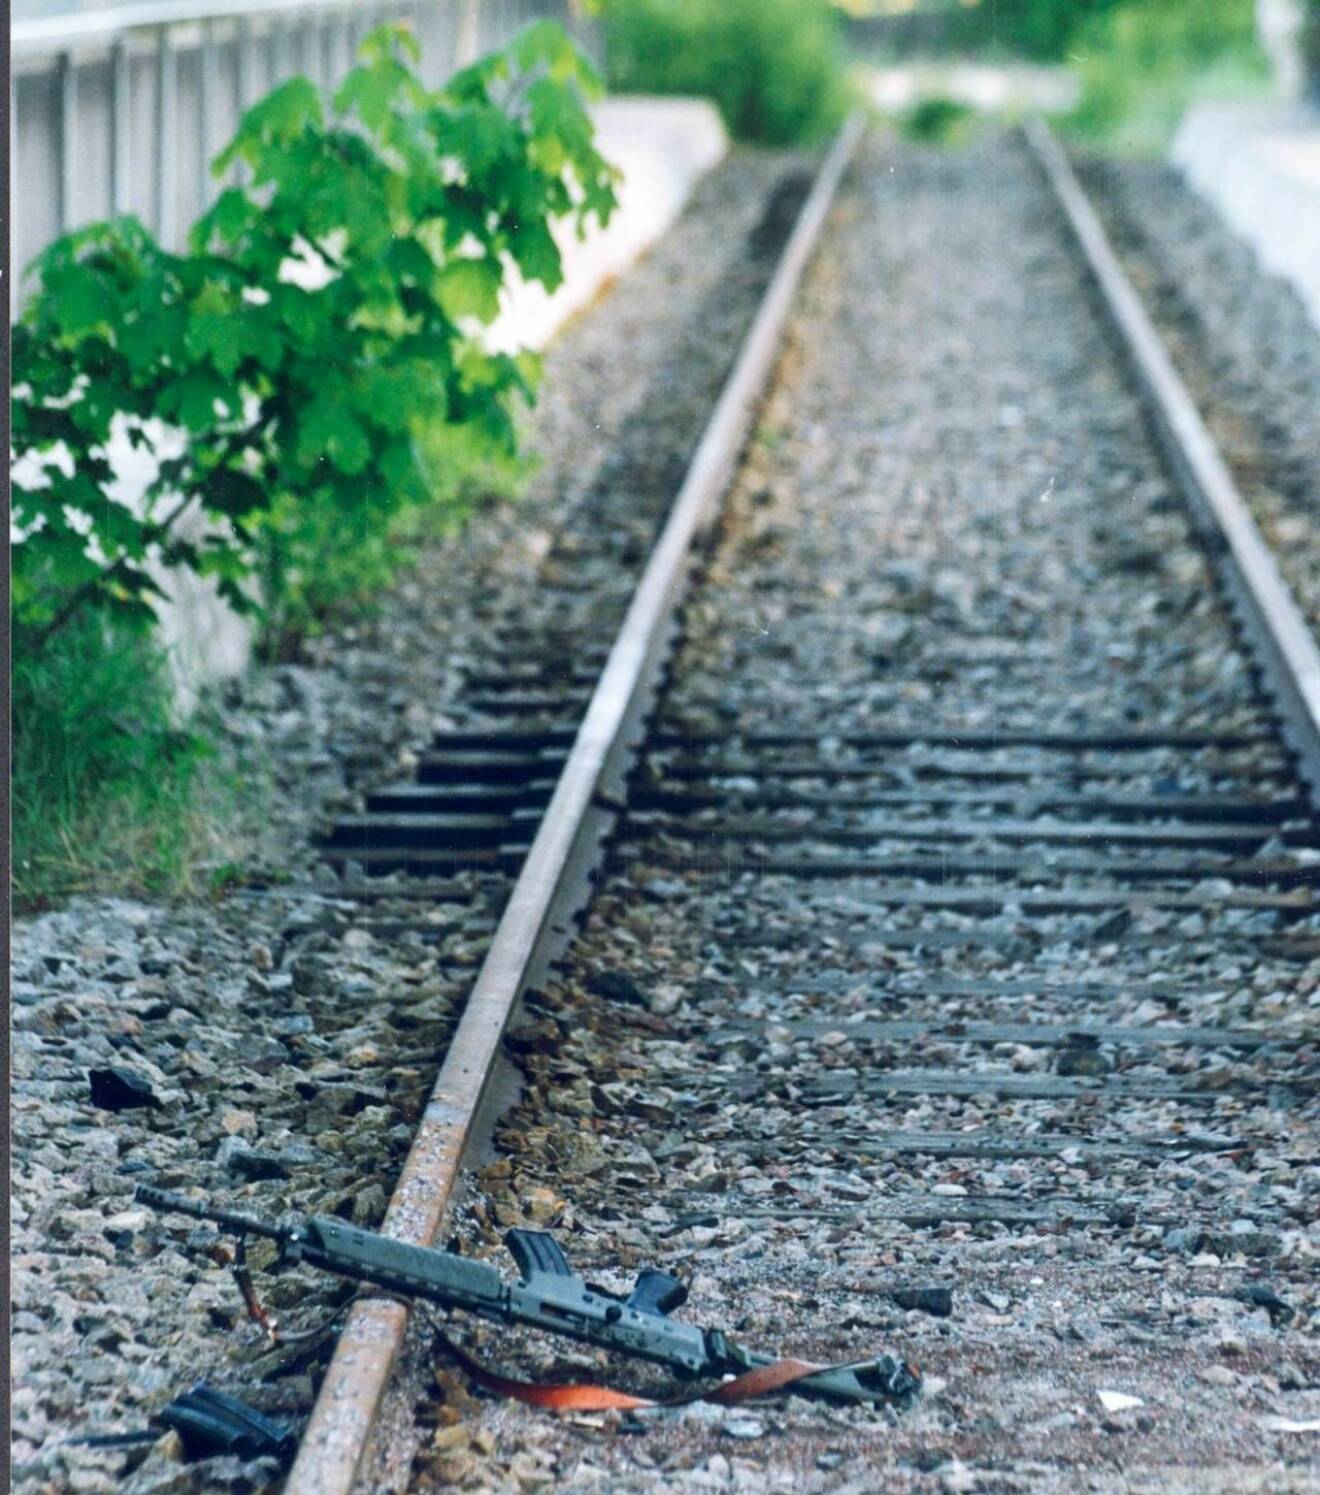 Vapen ligger på järnvägsspår